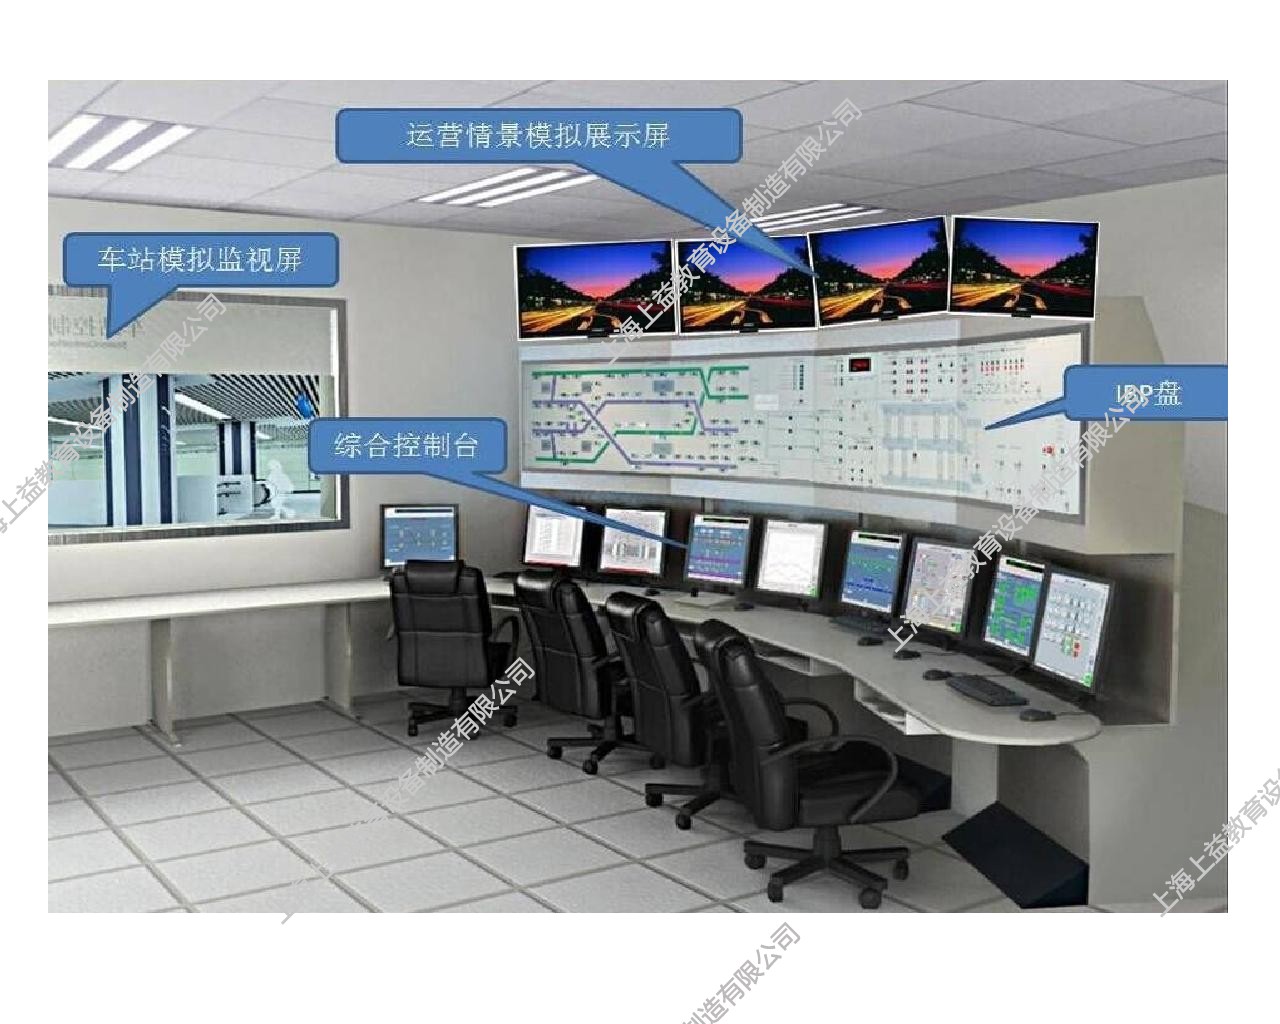 城市軌道交通綜合仿真實訓系統 三、車站綜合控制室IBP盤模擬監控實訓系統